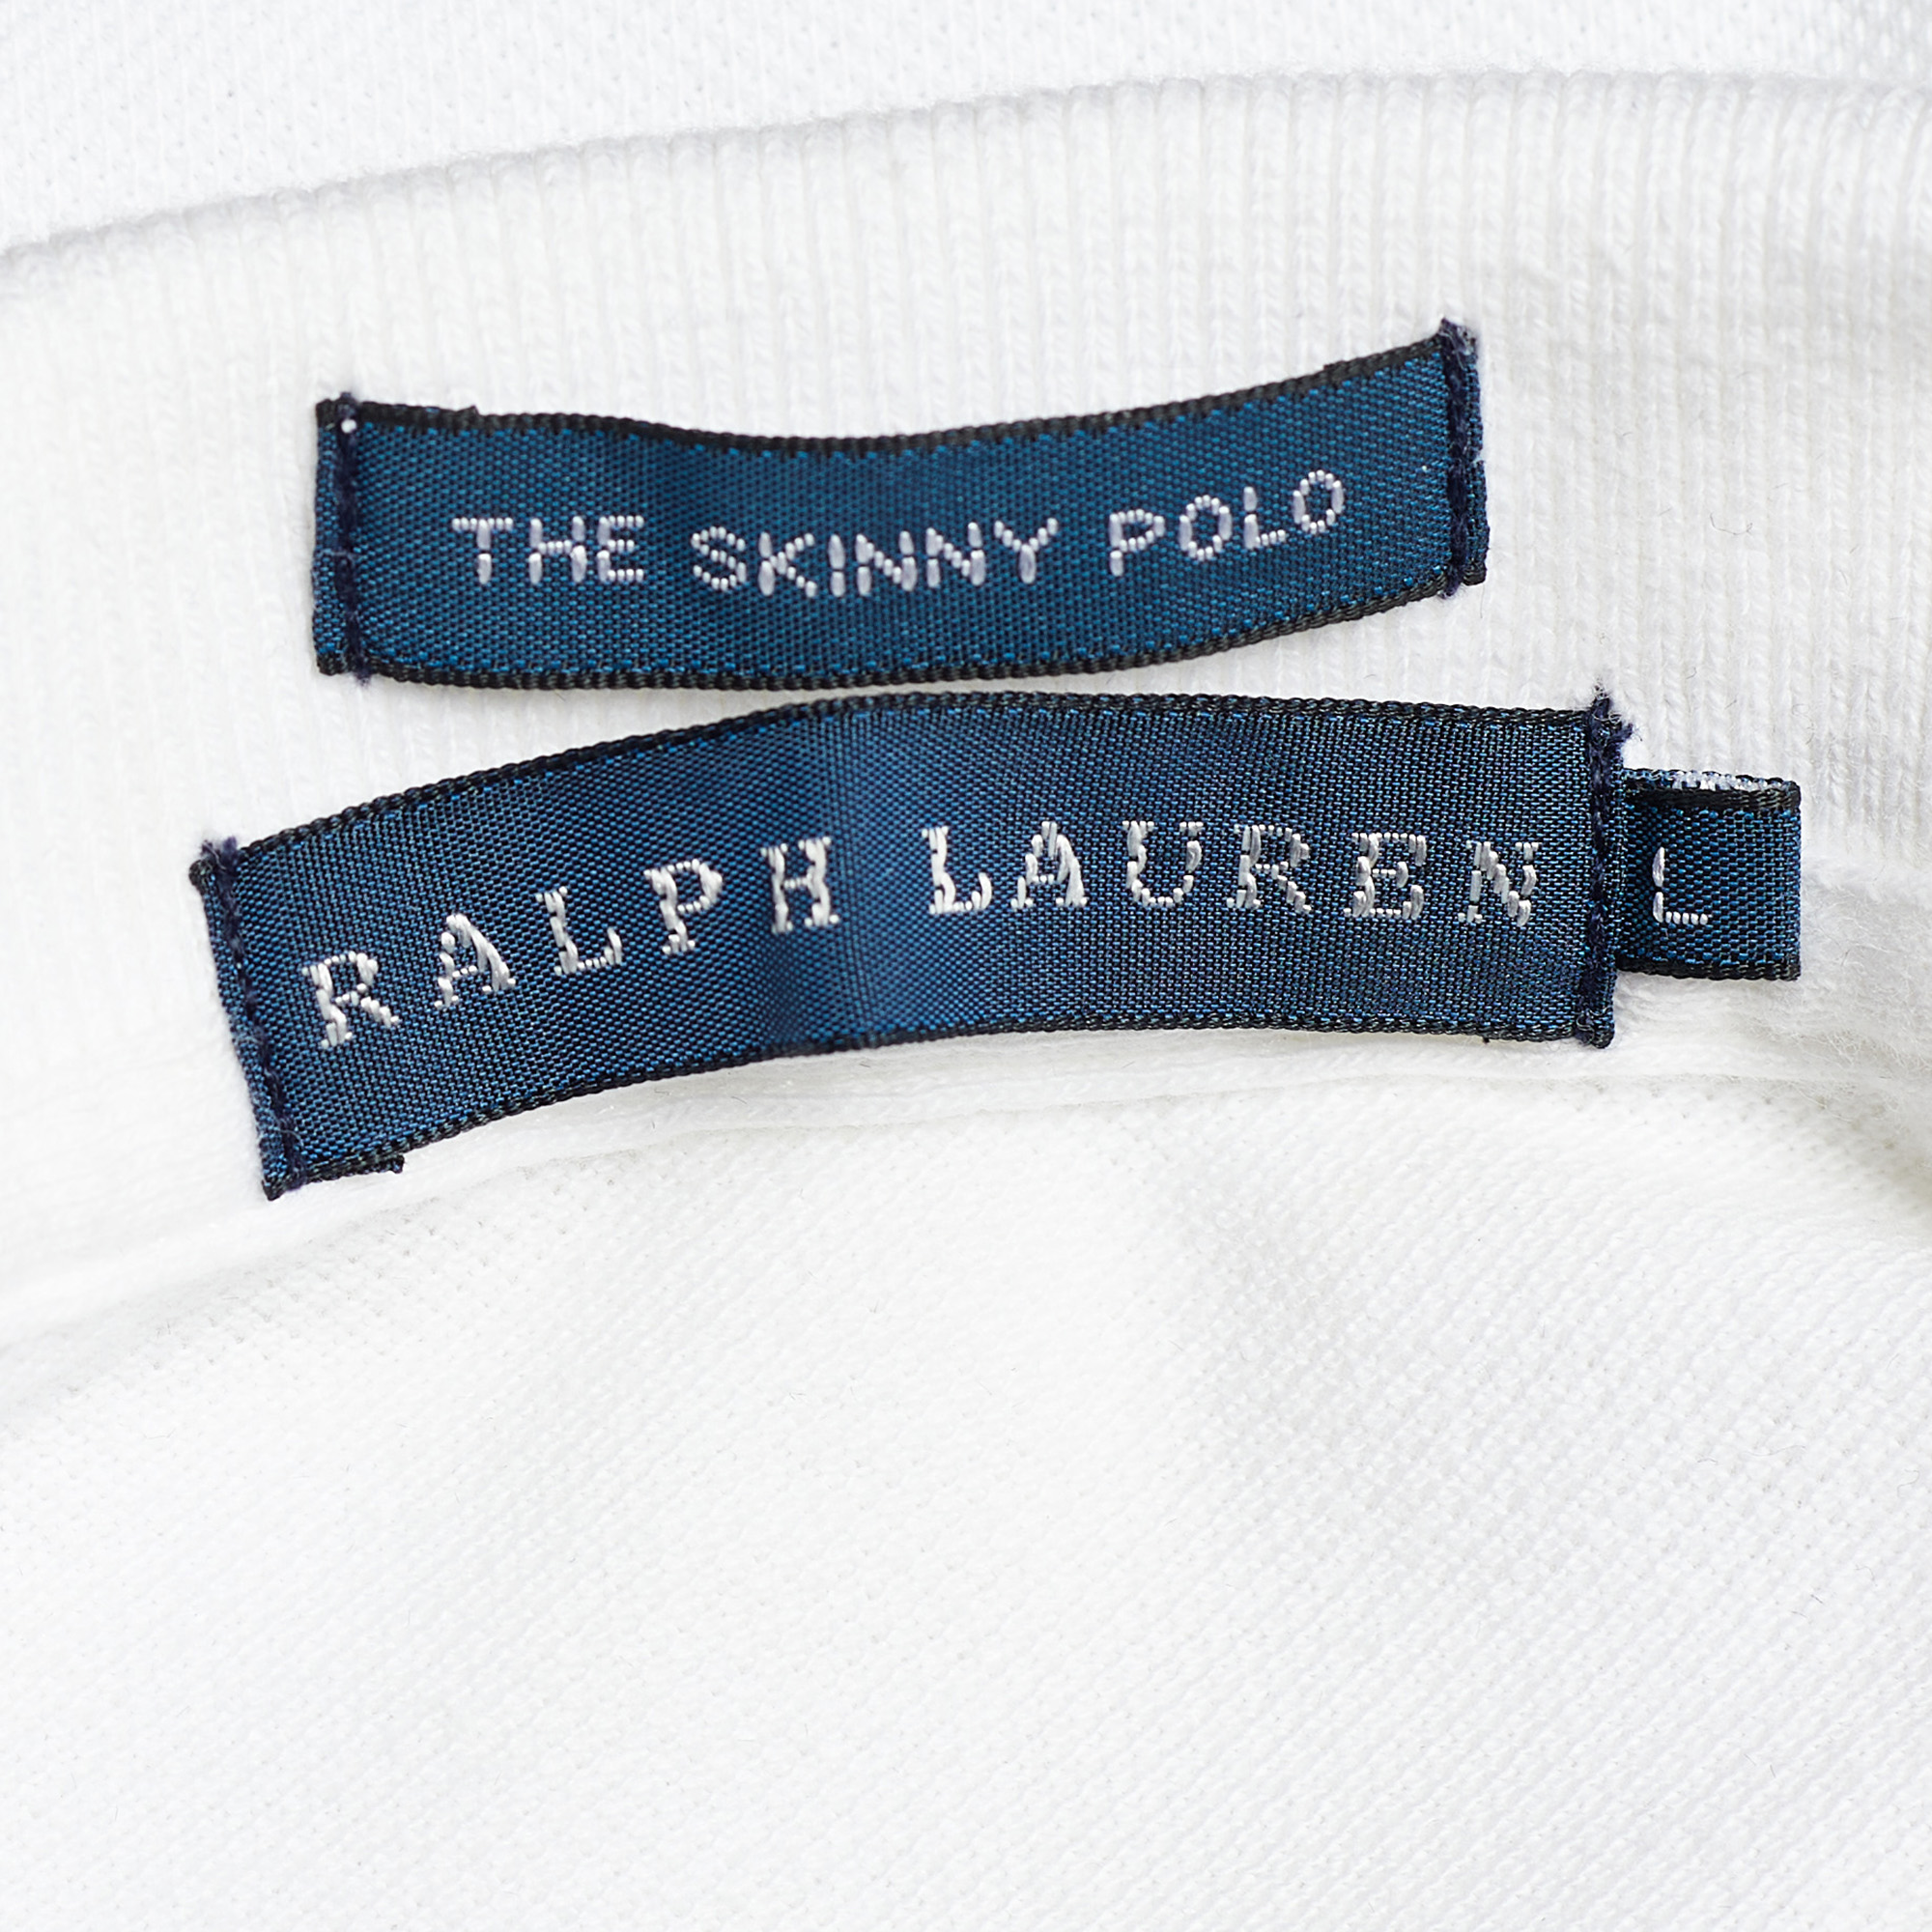 Ralph Lauren White Cotton Pique Polo T-Shirt L